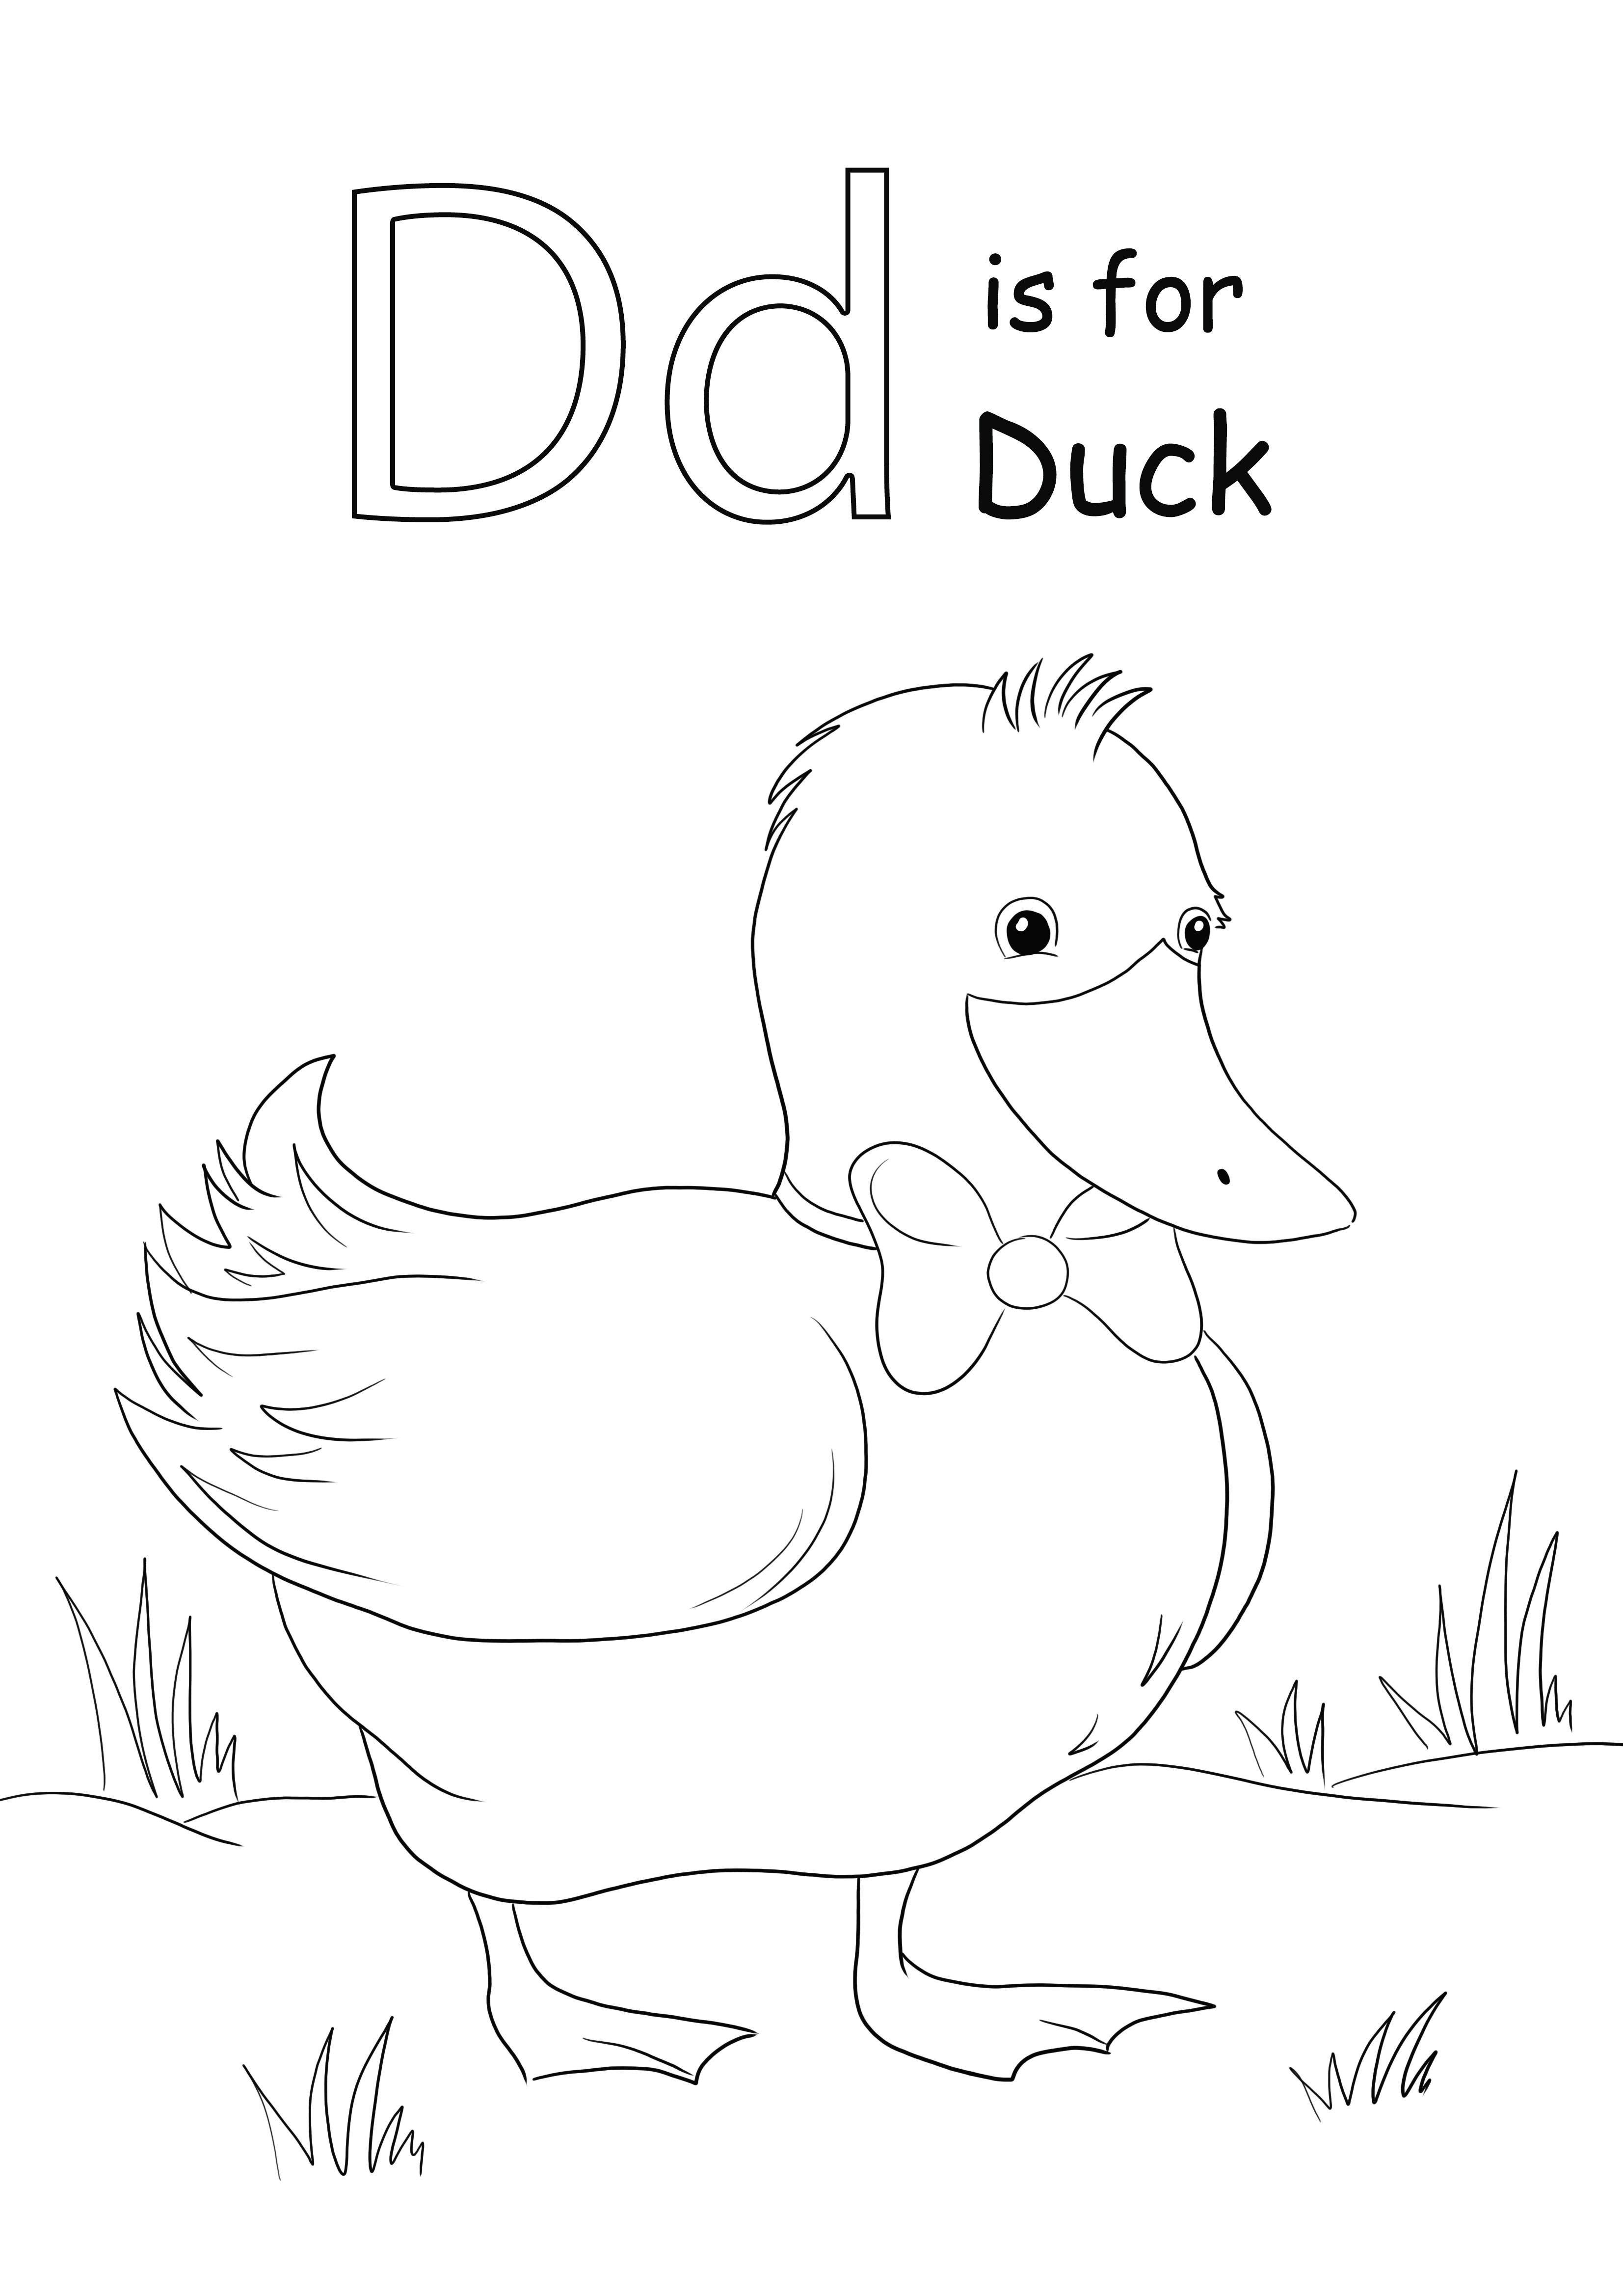 A D betű ingyenes nyomtatása a kacsa színező képéhez, amelyet a gyerekek könnyen megtanulhatnak